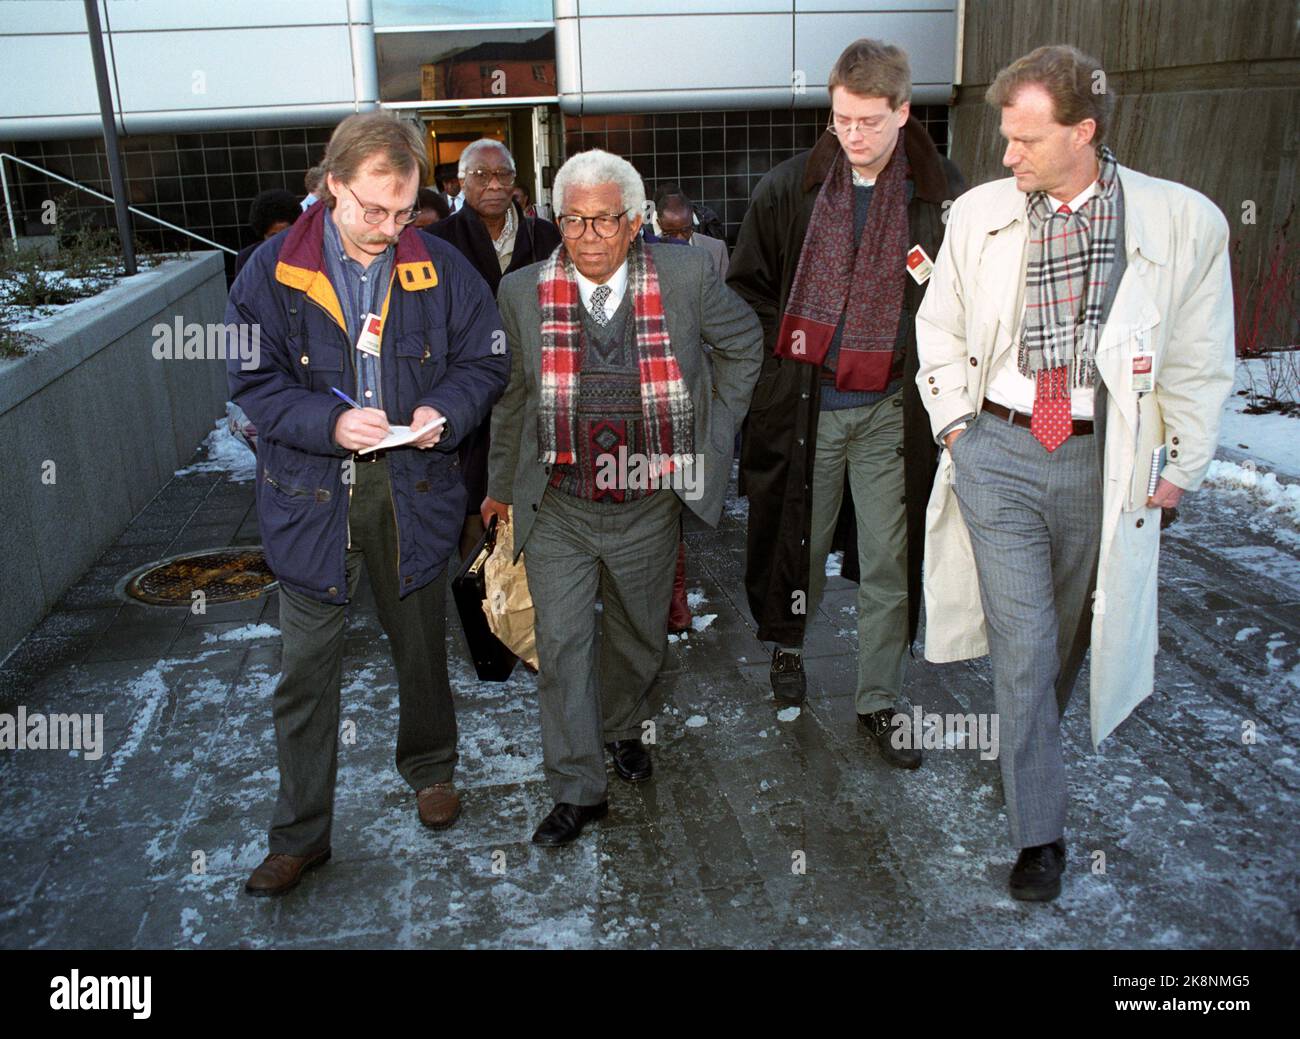 Oslo 19900129. Il leader dell'ANC Walter Sisulu, circondato da giornalisti in arrivo a Fornebu, Doug Mellgren, AP (t.v.), Audun Eckhoff, NTB, E Einar Lude, NRK (t.H.). Sisulu è stato nelle prigioni sudafricane per 25 anni, e ha scelto di visitare la Norvegia come primo paese al di fuori dell'Africa quando è stato rilasciato. Foto Bjørn-owe Holmberg / NTB / NTB Foto Stock